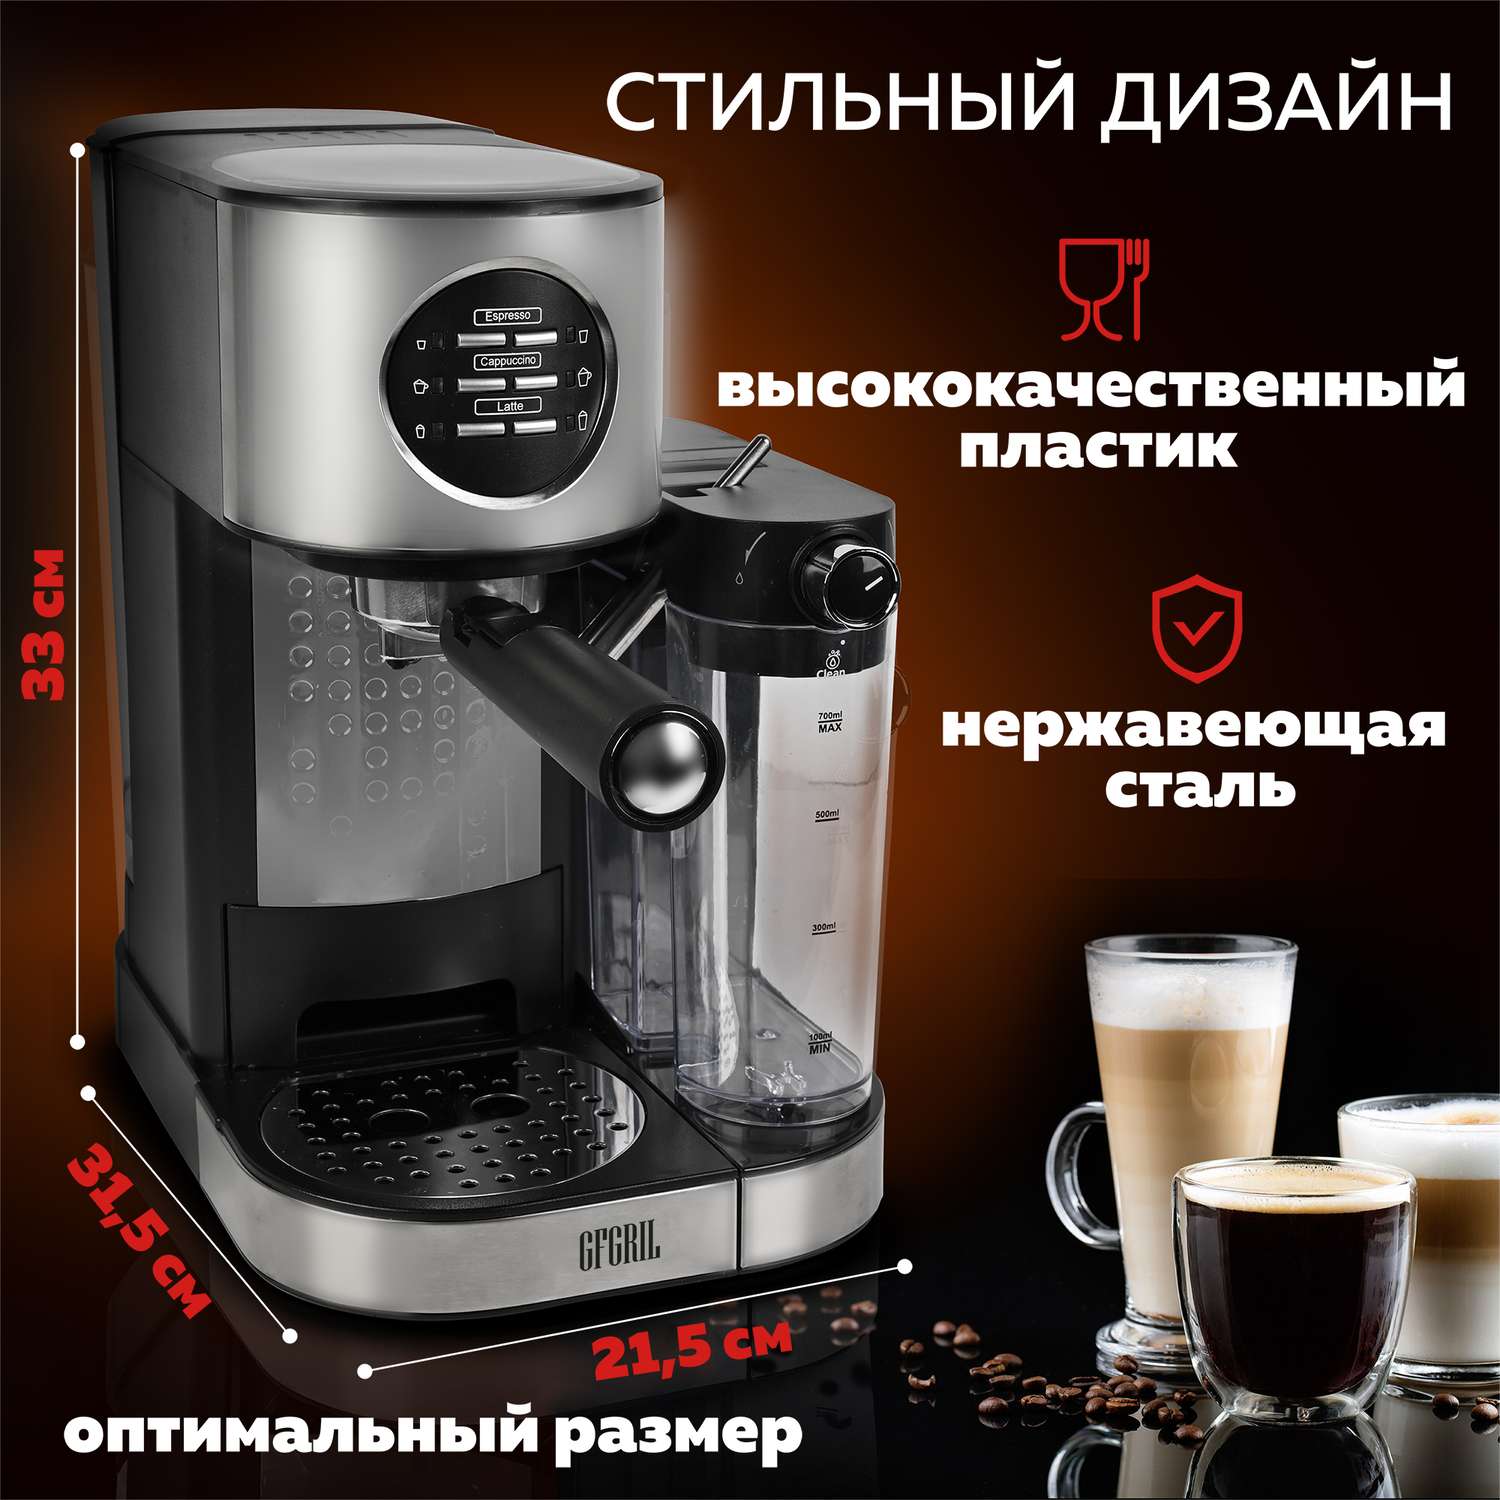 Кофеварка GFGRIL С автоматическим капучинатором 3 в 1 GFC-A300 Эспрессо-Капучино-Латте - фото 11